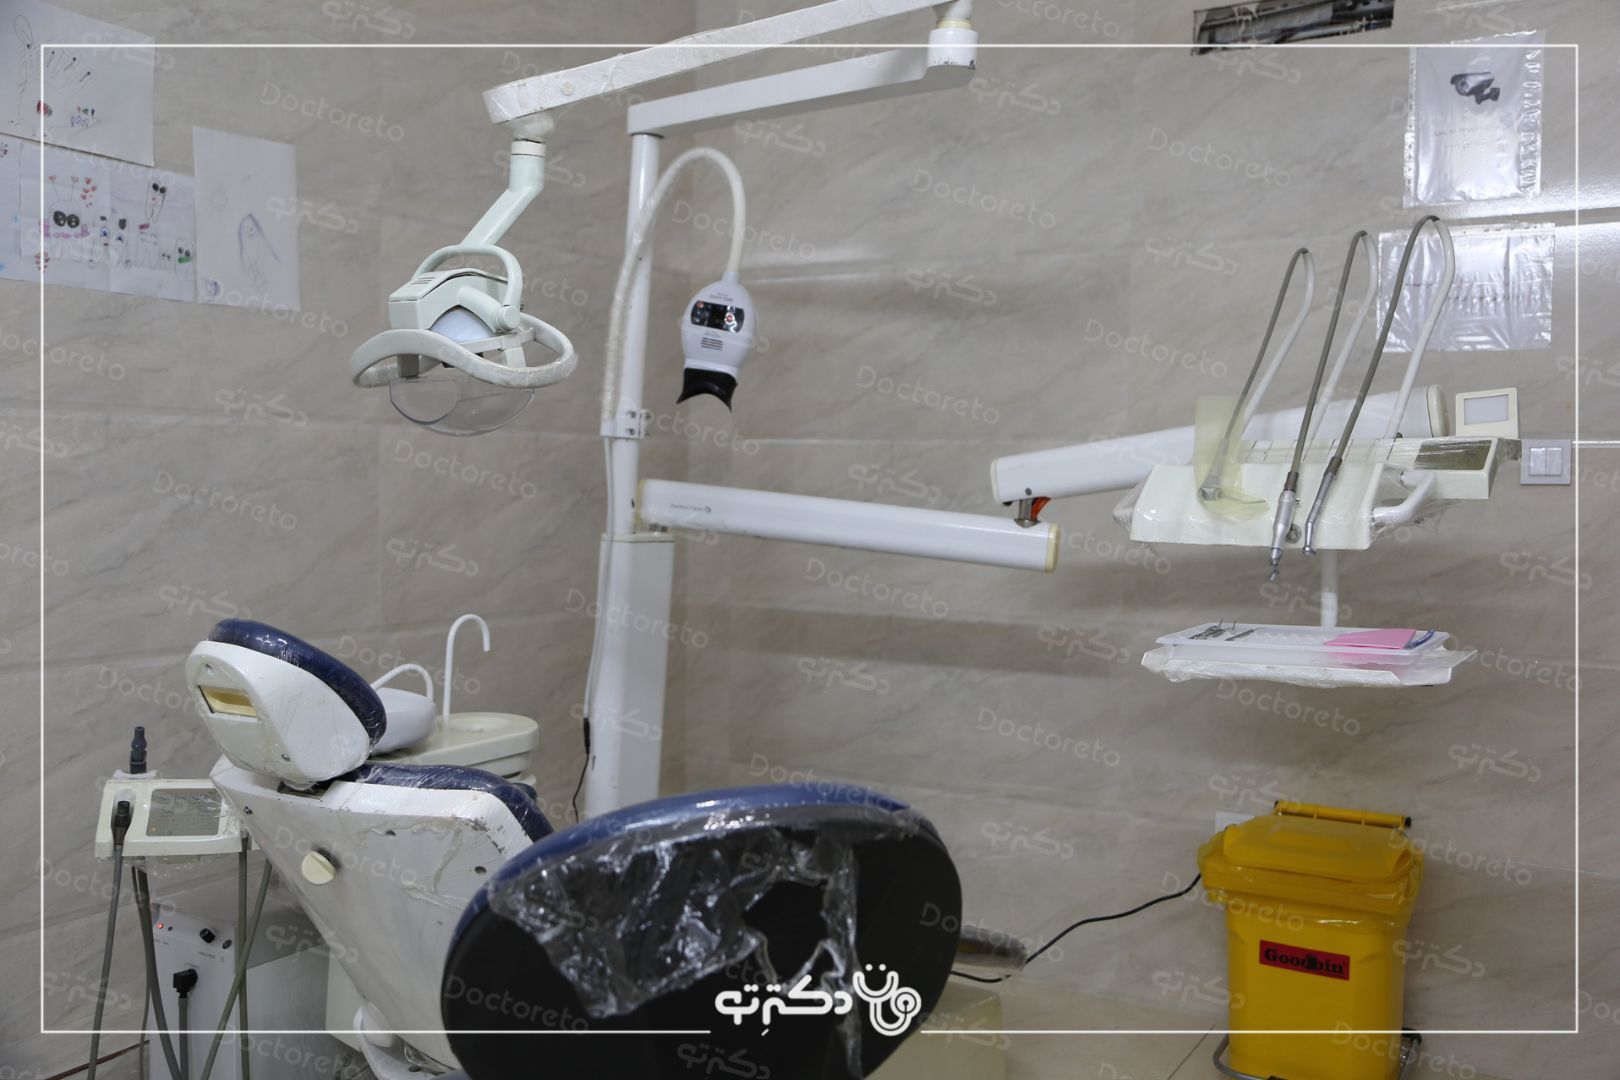 پر کردن دندان یک سطحی با کامپوزیت سوئیسی دکتر فاطمه فقیهی در شیراز 7